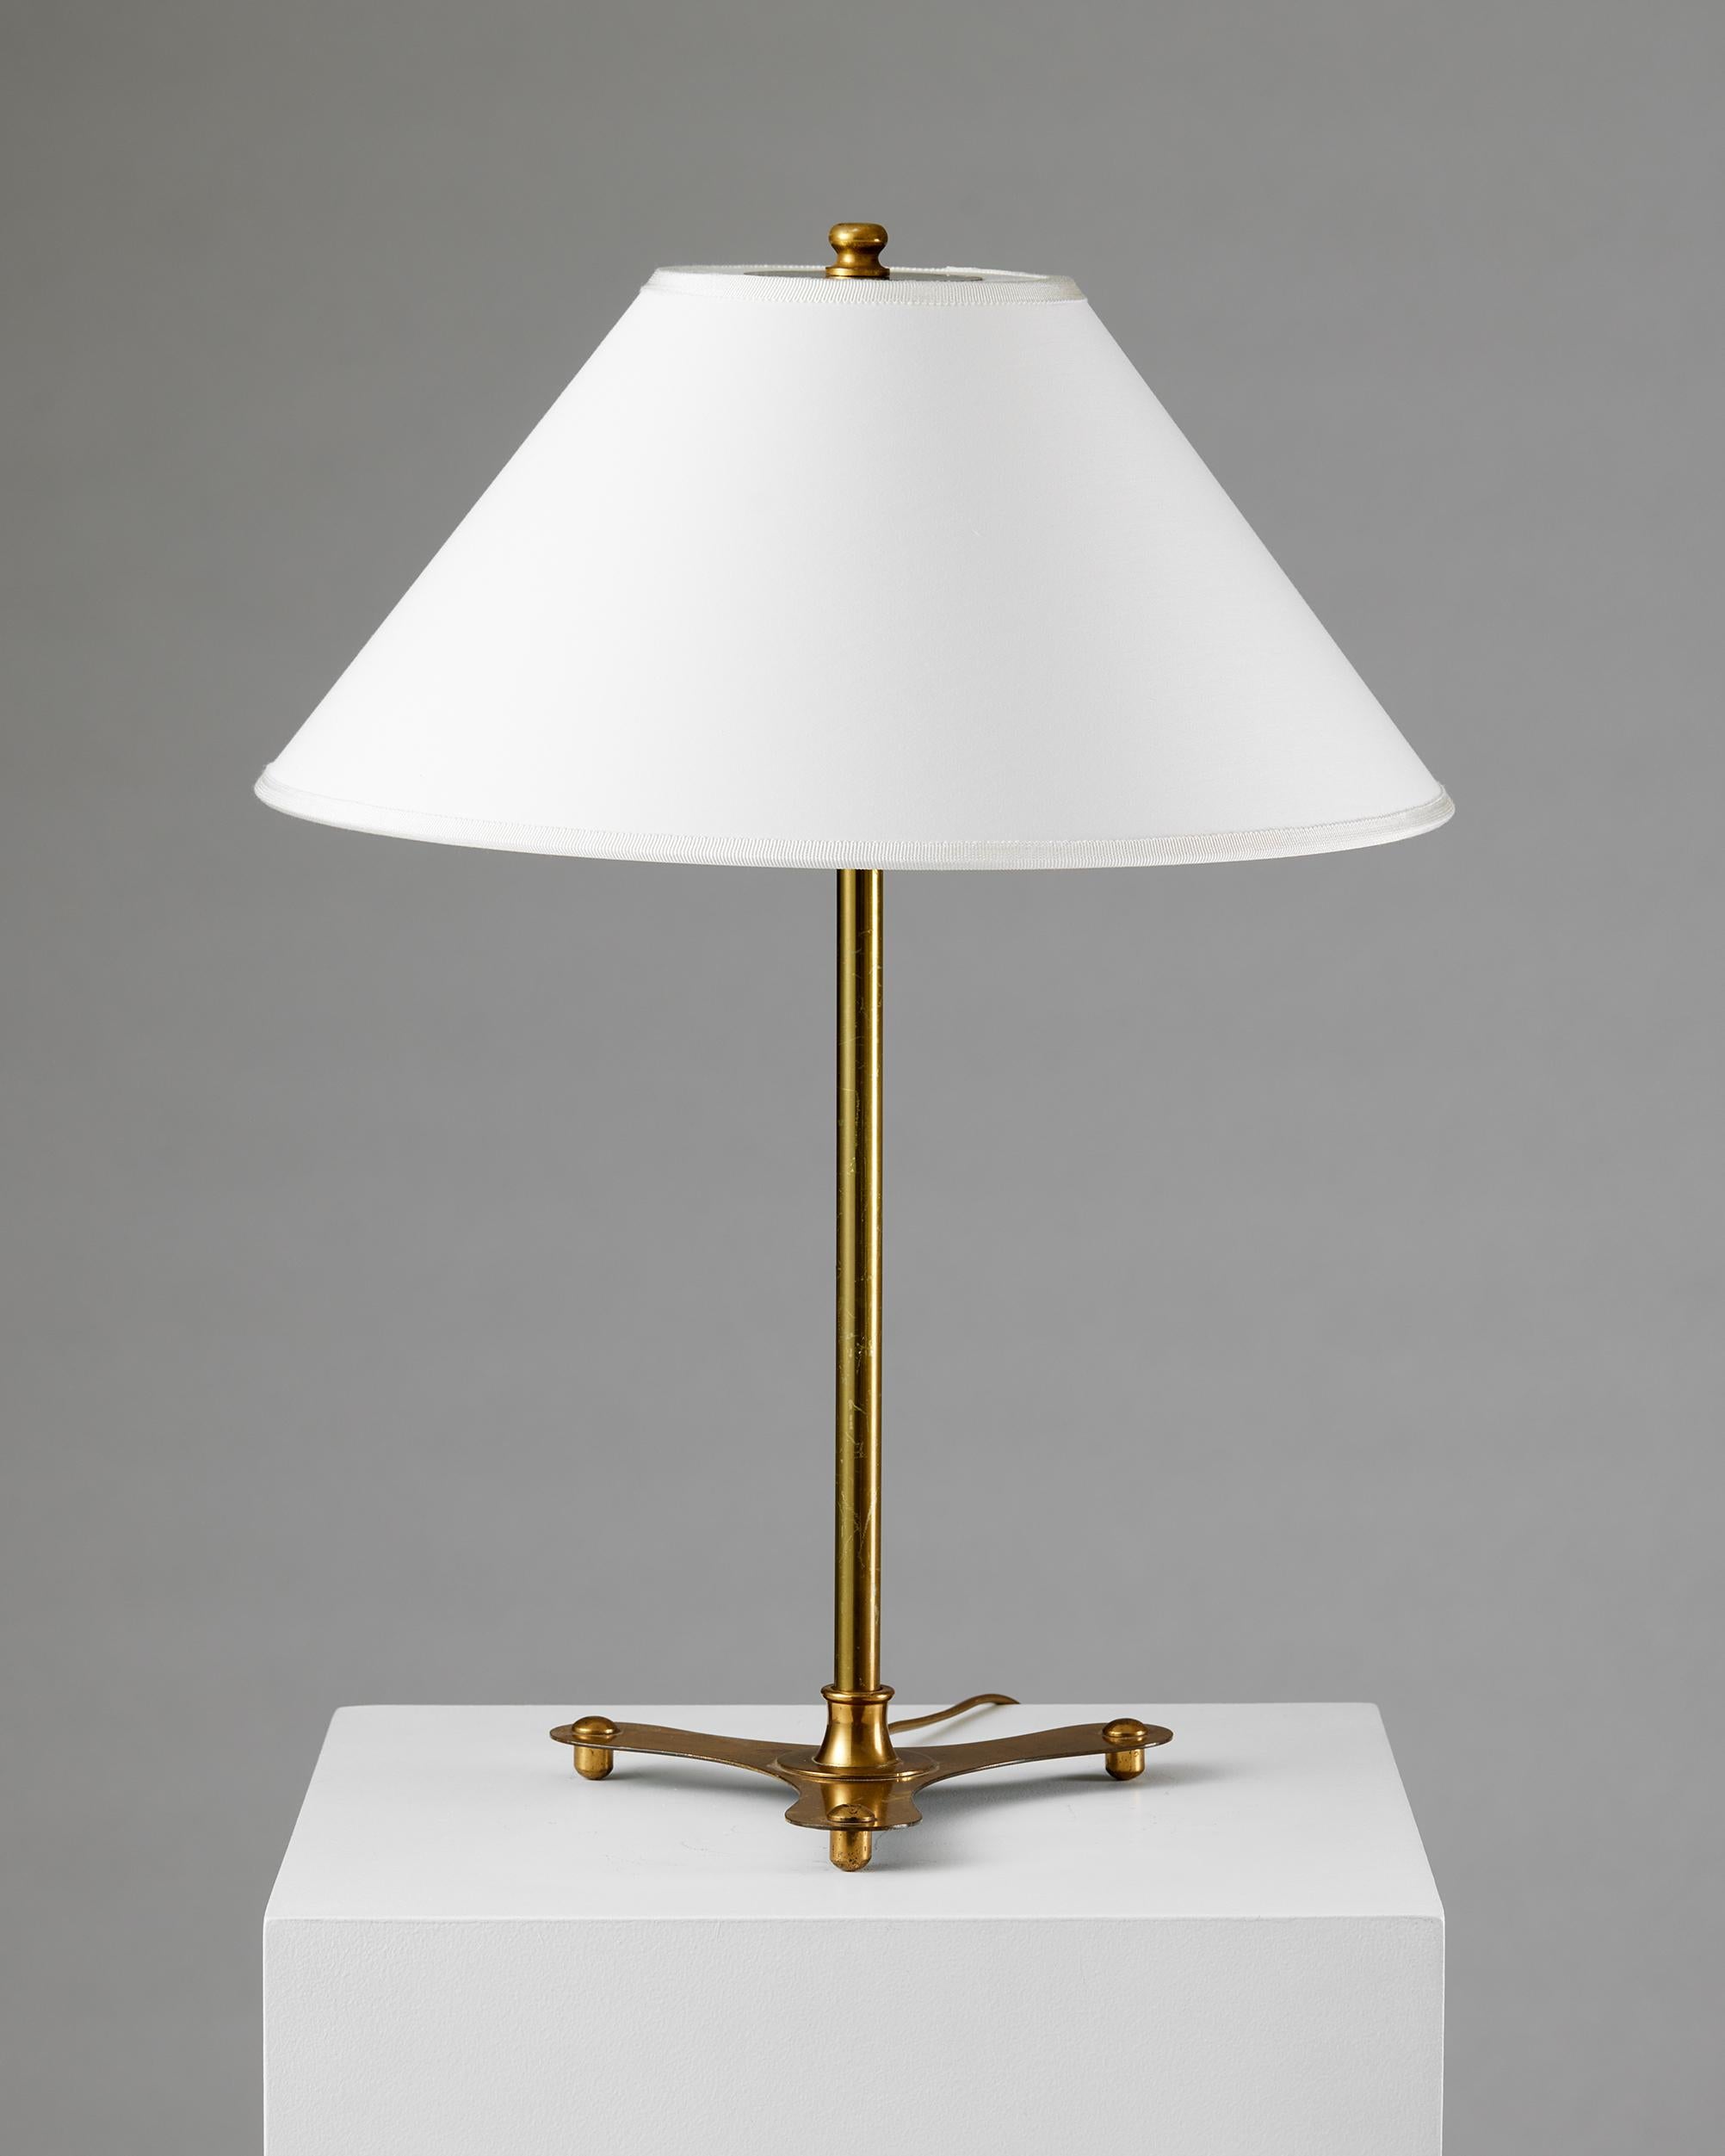 Brass Pair of table lamps model 2552 designed by Josef Frank for Svenskt Tenn, 1950s